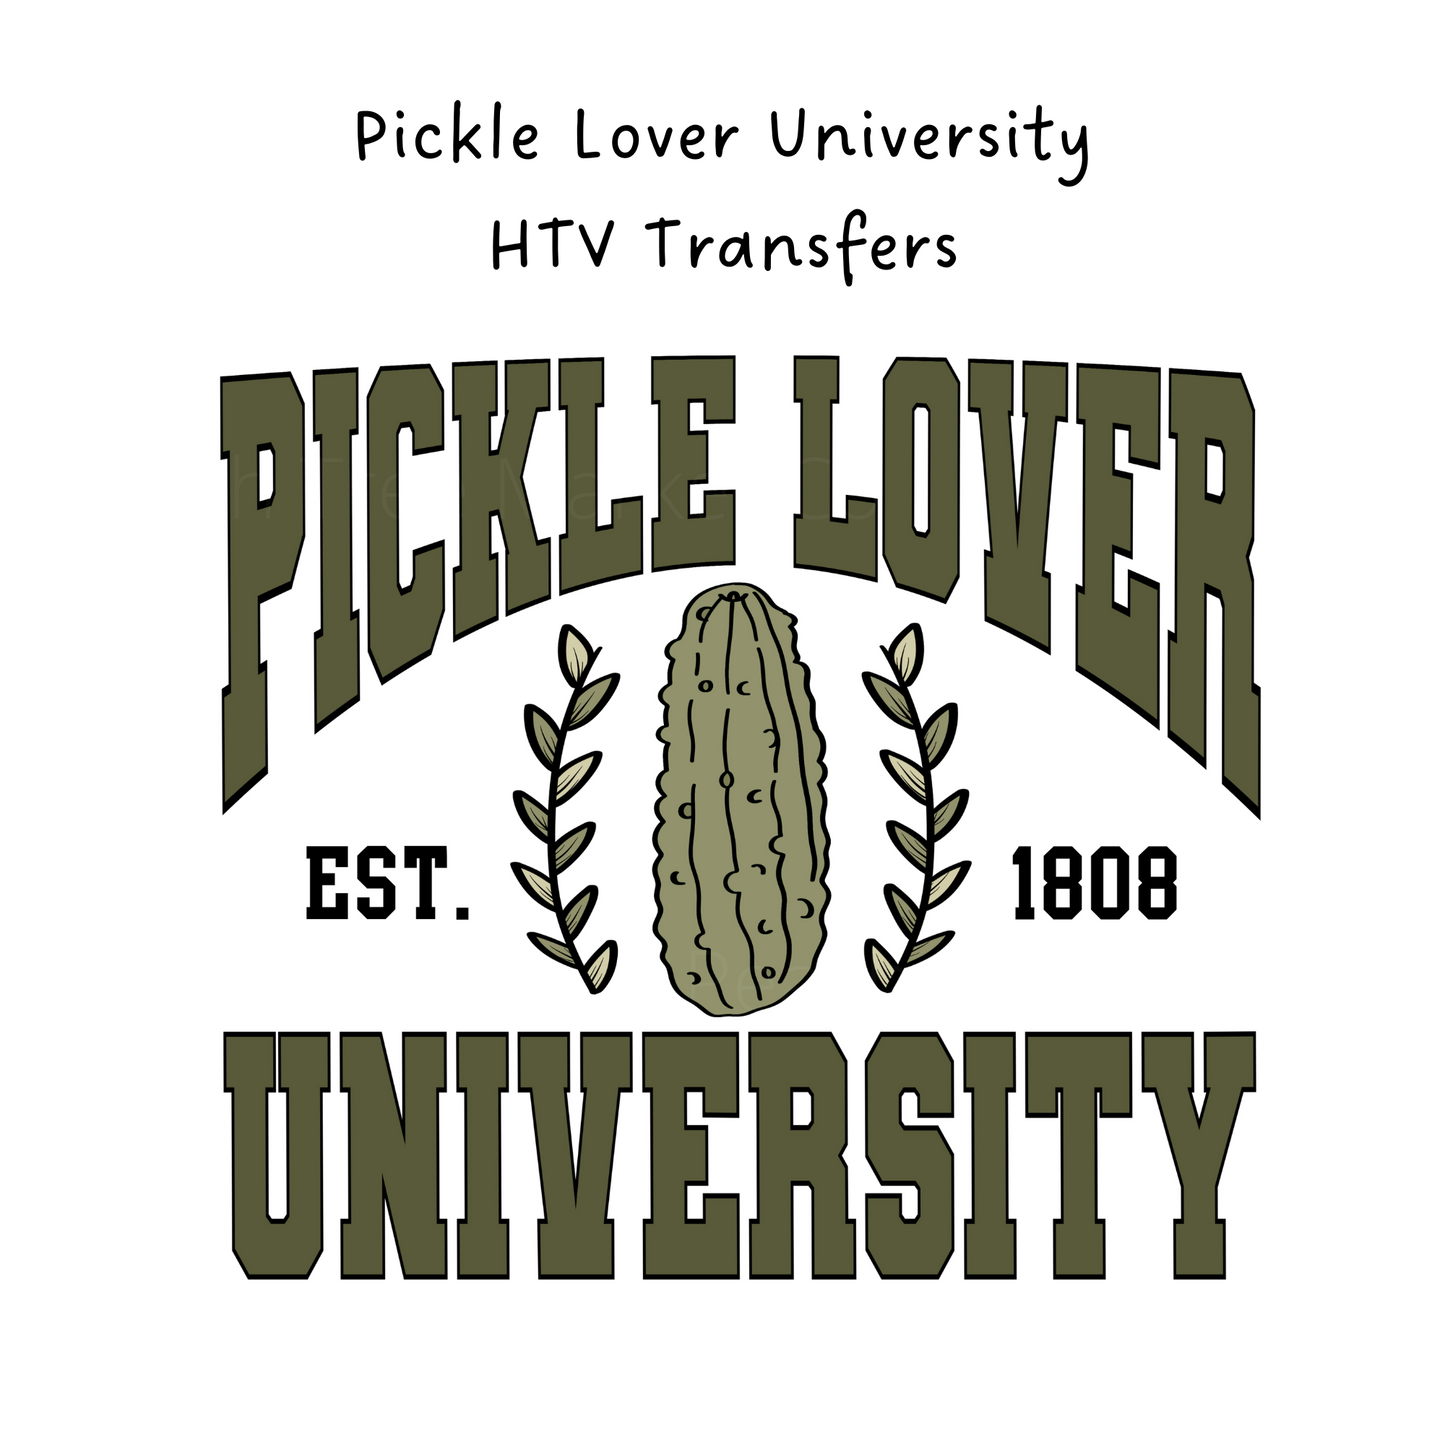 Pickle Lover University HTV Transfer